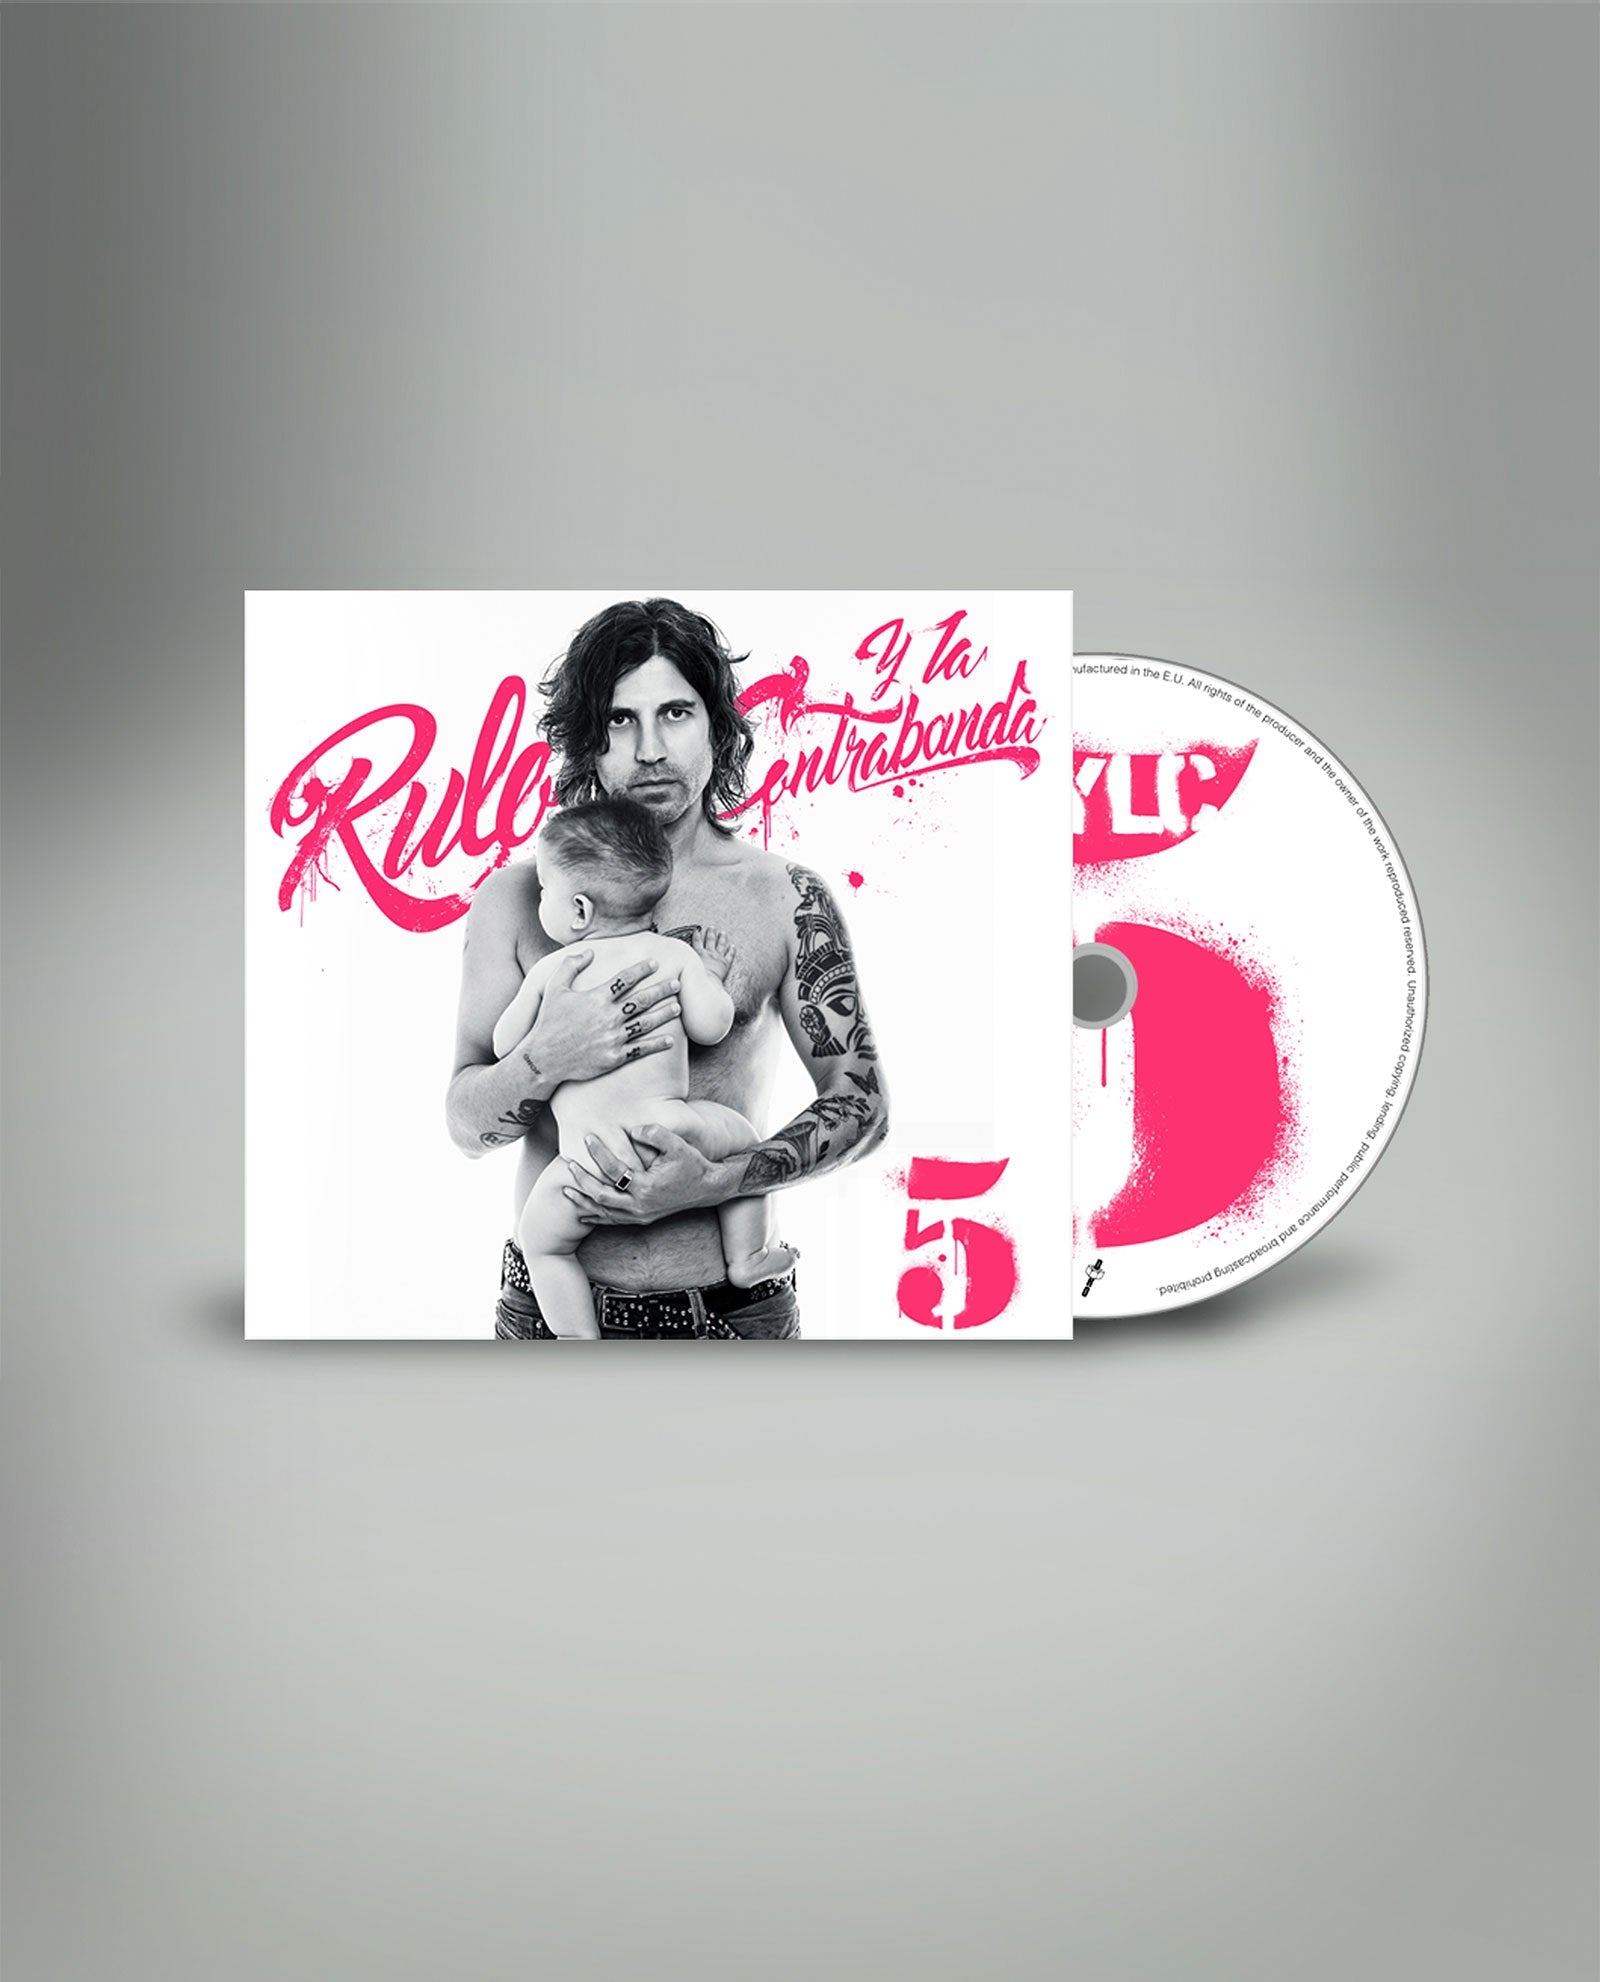 Rulo y la Contrabanda - CD Digipack "5" - D2fy · Rocktud - Rocktud